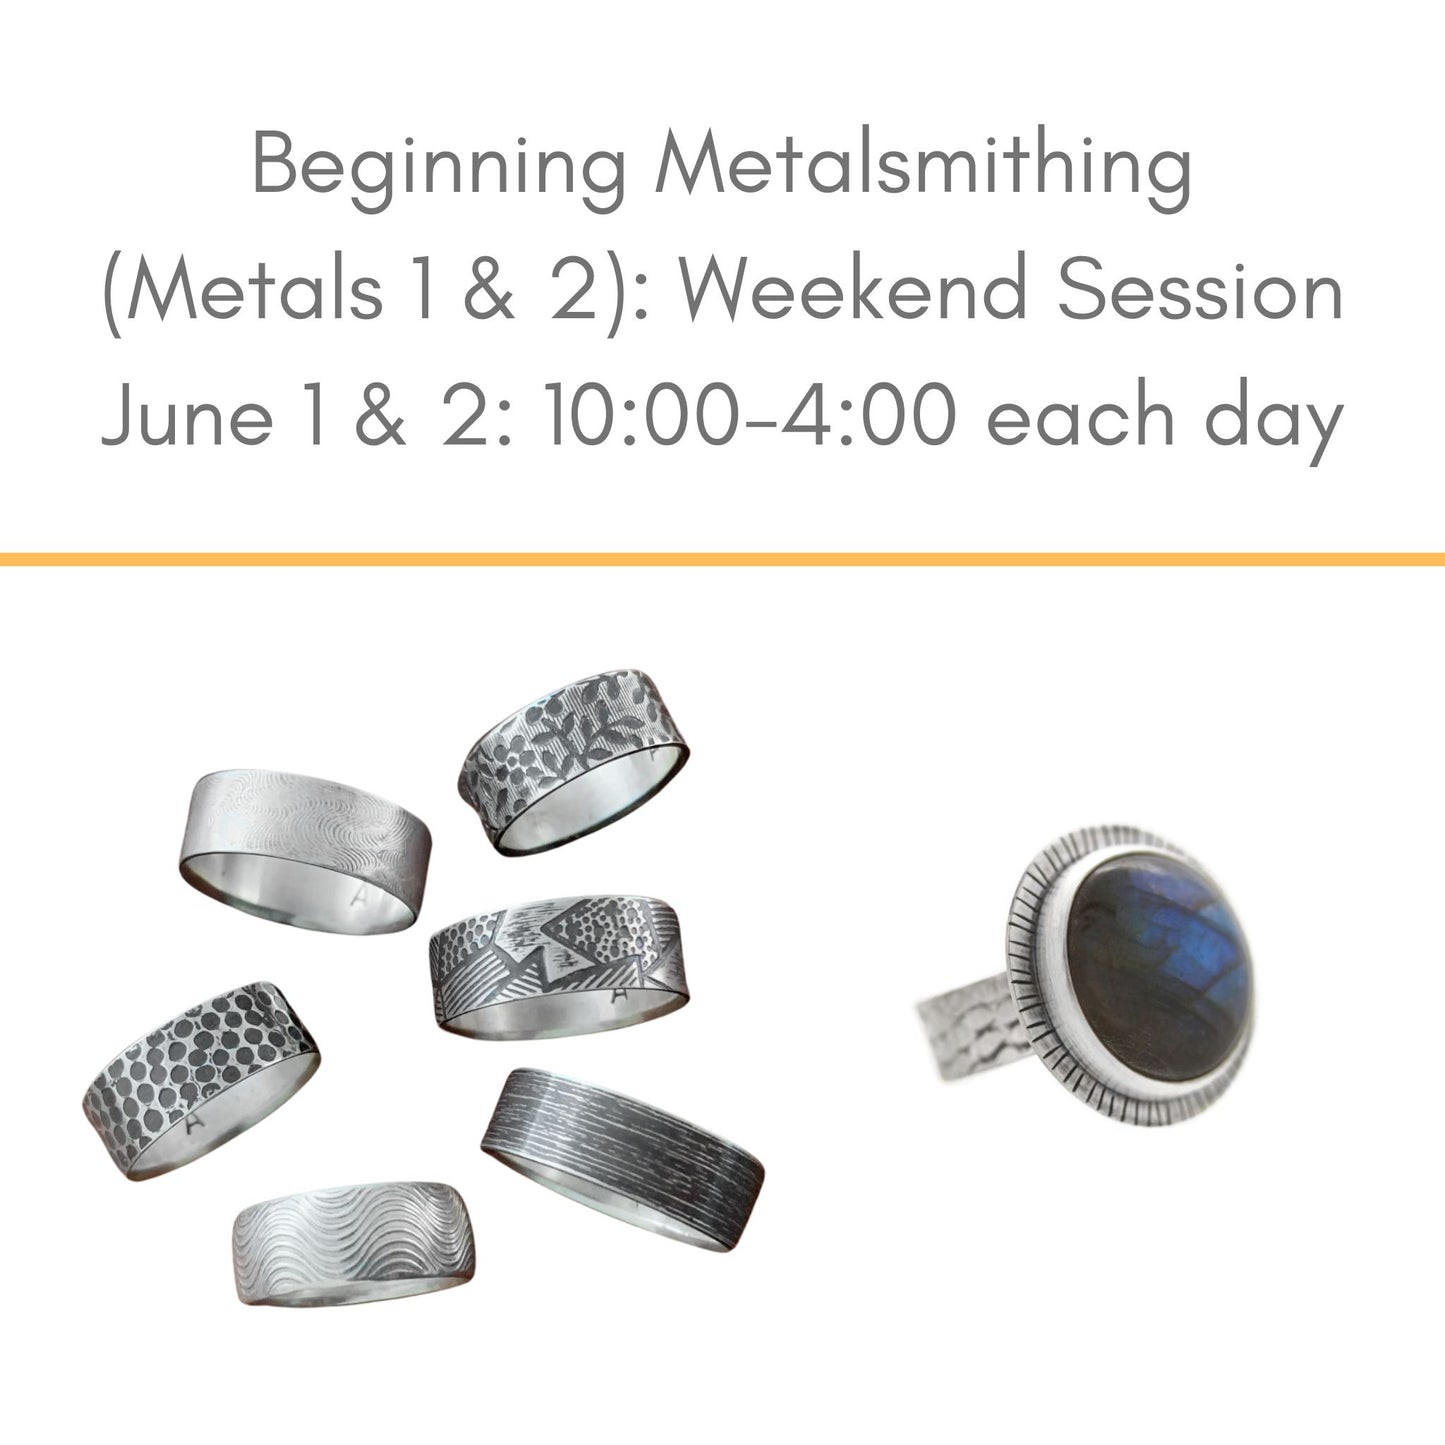 Beginning Metalsmithing June 1 and 2